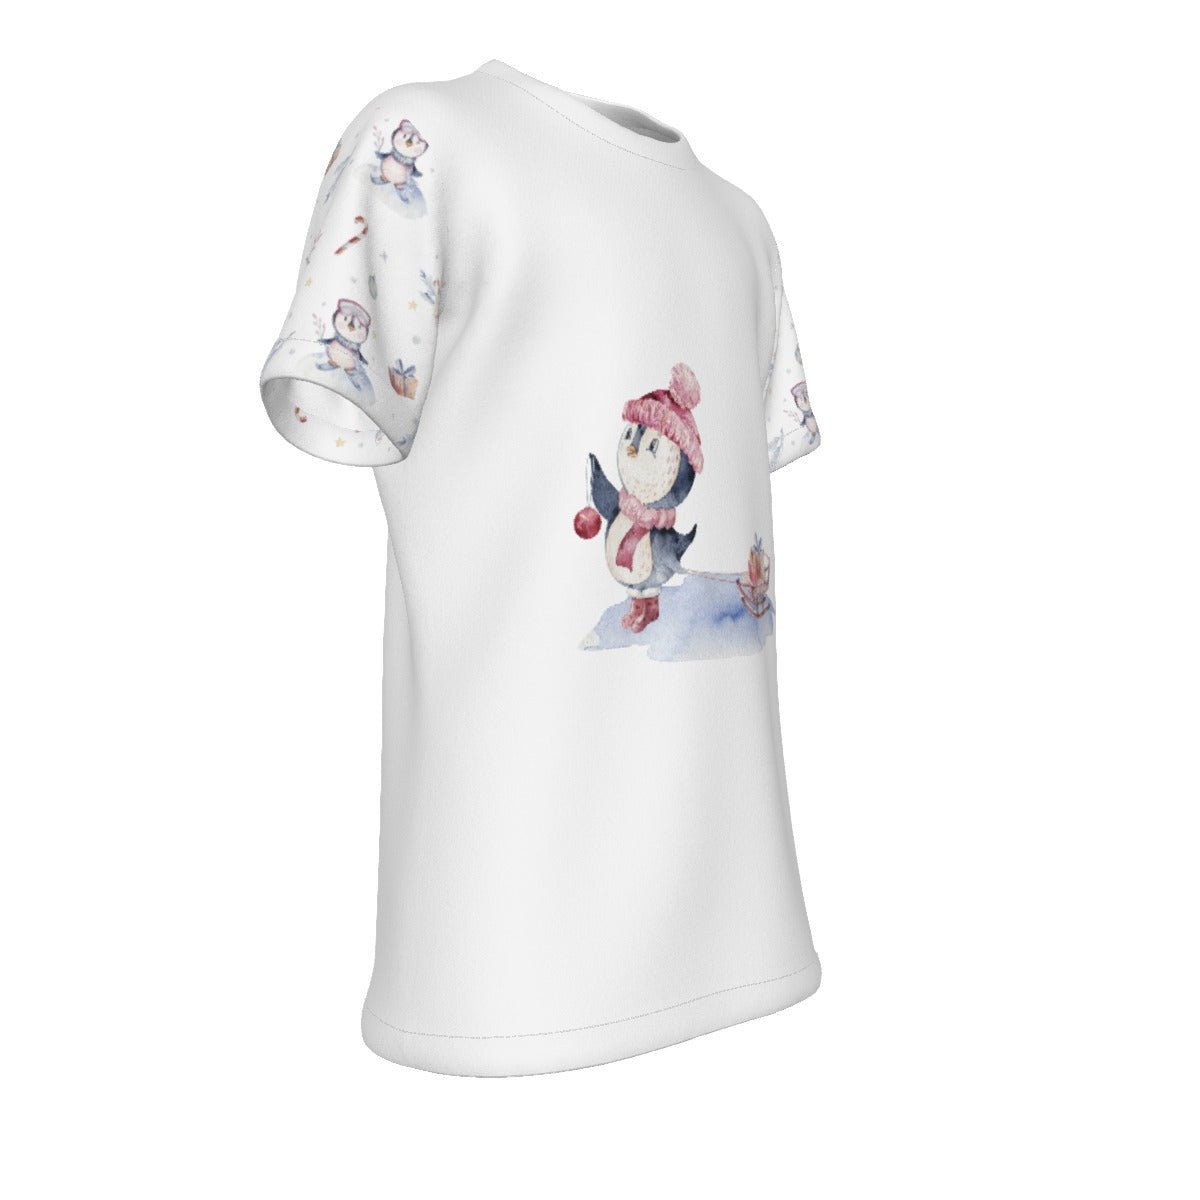 Kid's Christmas T-Shirt - Skating Penguin - Festive Style